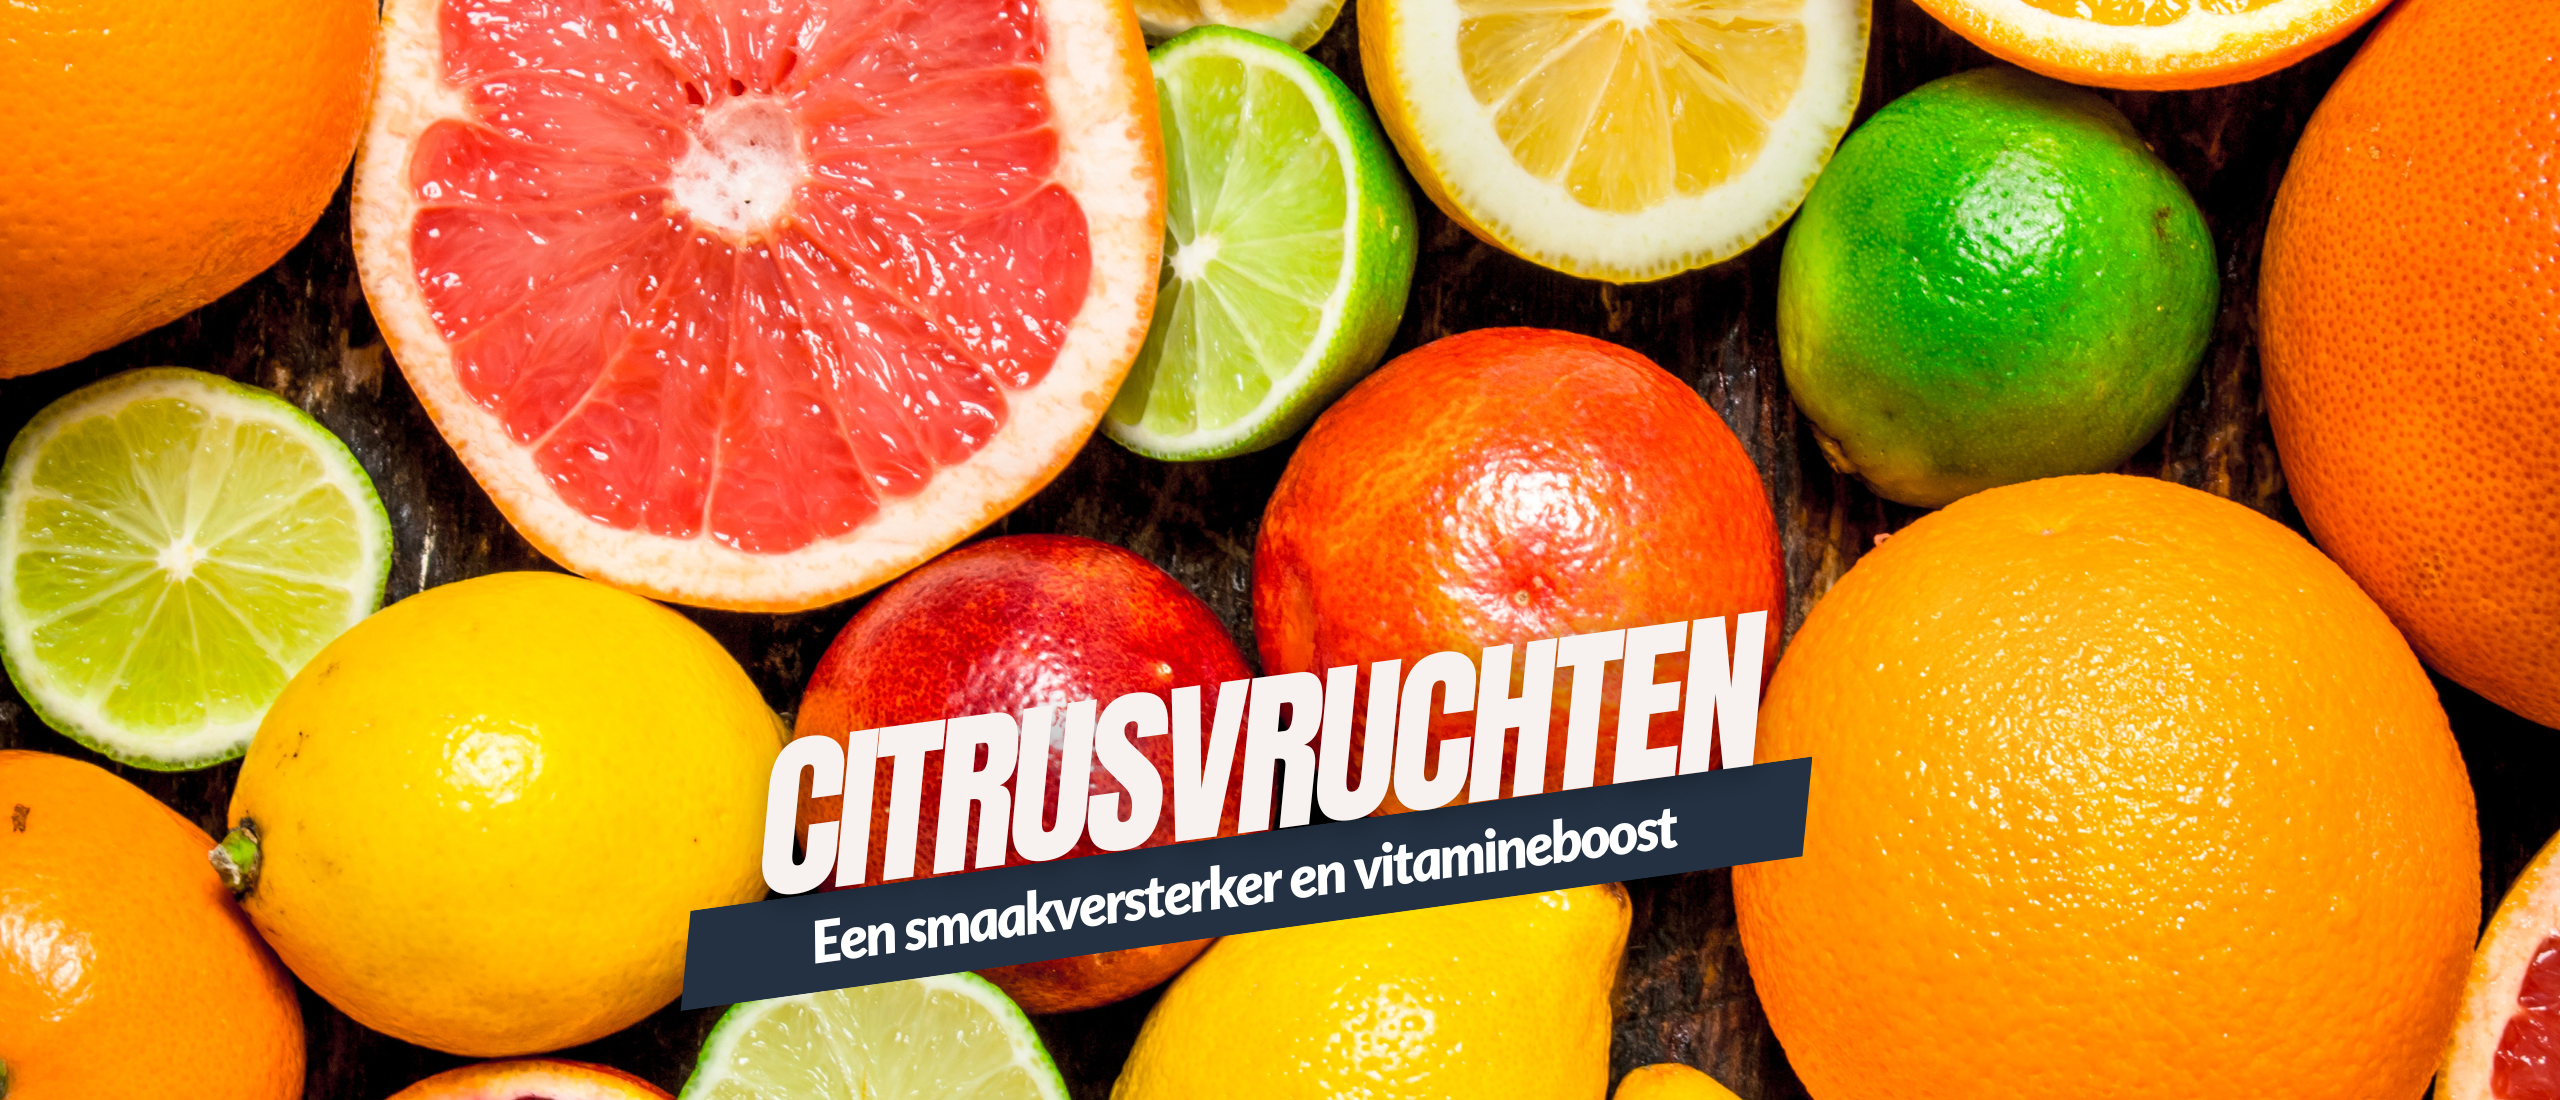 Citrusvruchten een smaakversterker en vitamineboost Kennisboek Fruit Genzeloos Gastvrij